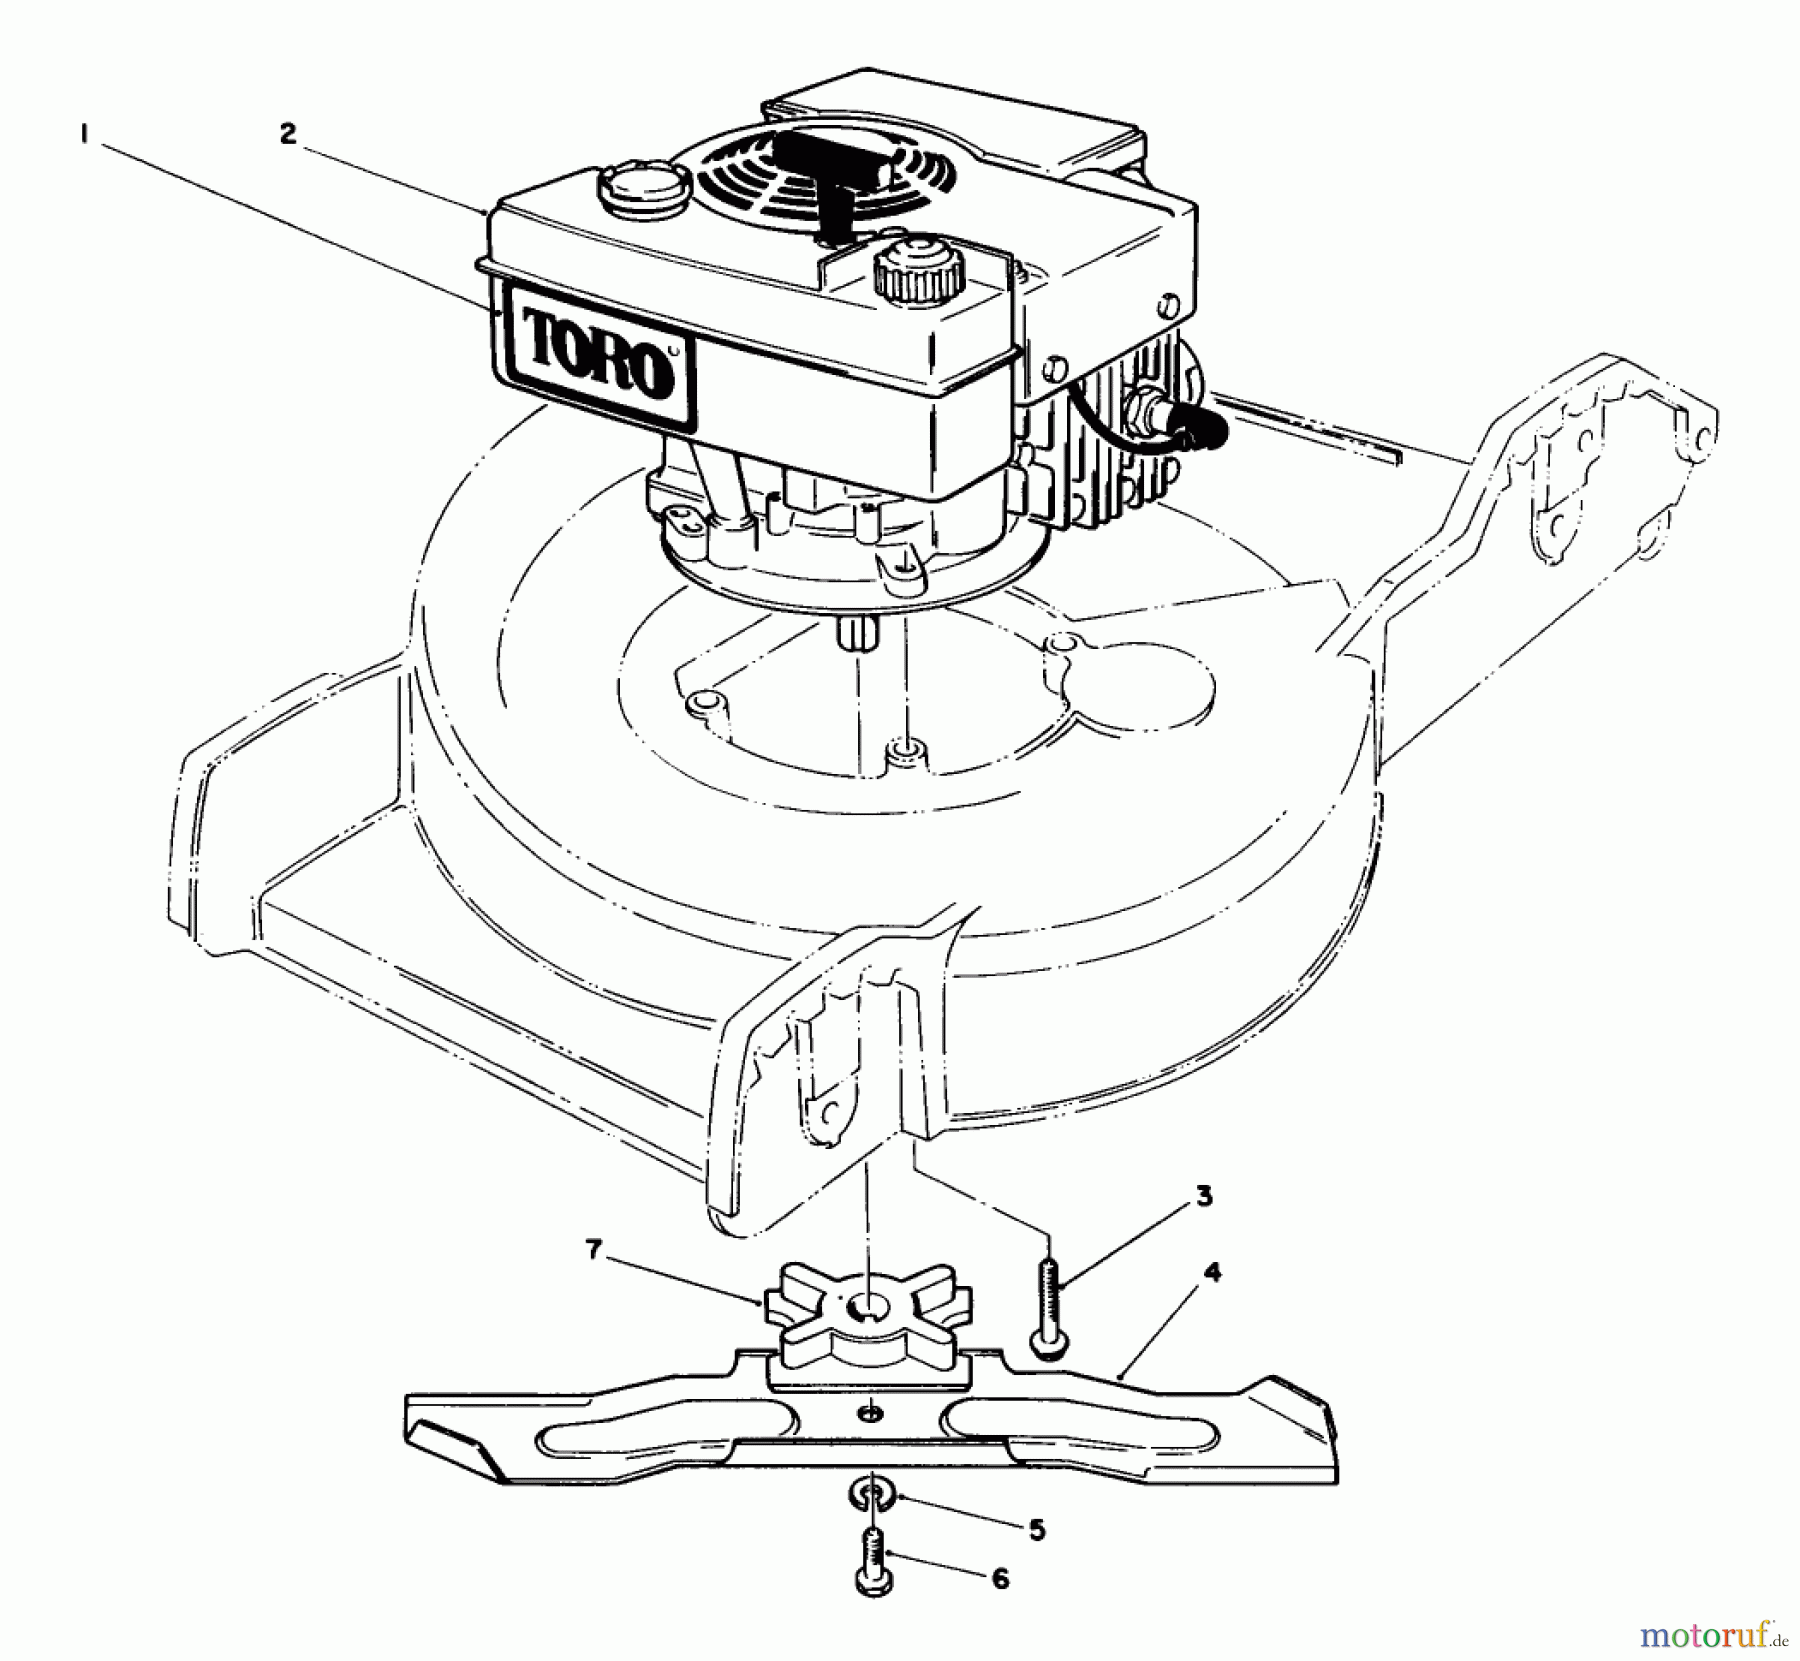  Toro Neu Mowers, Walk-Behind Seite 1 20780C - Toro Lawnmower, 1985 (5000001-5999999) ENGINE ASSEMBLY